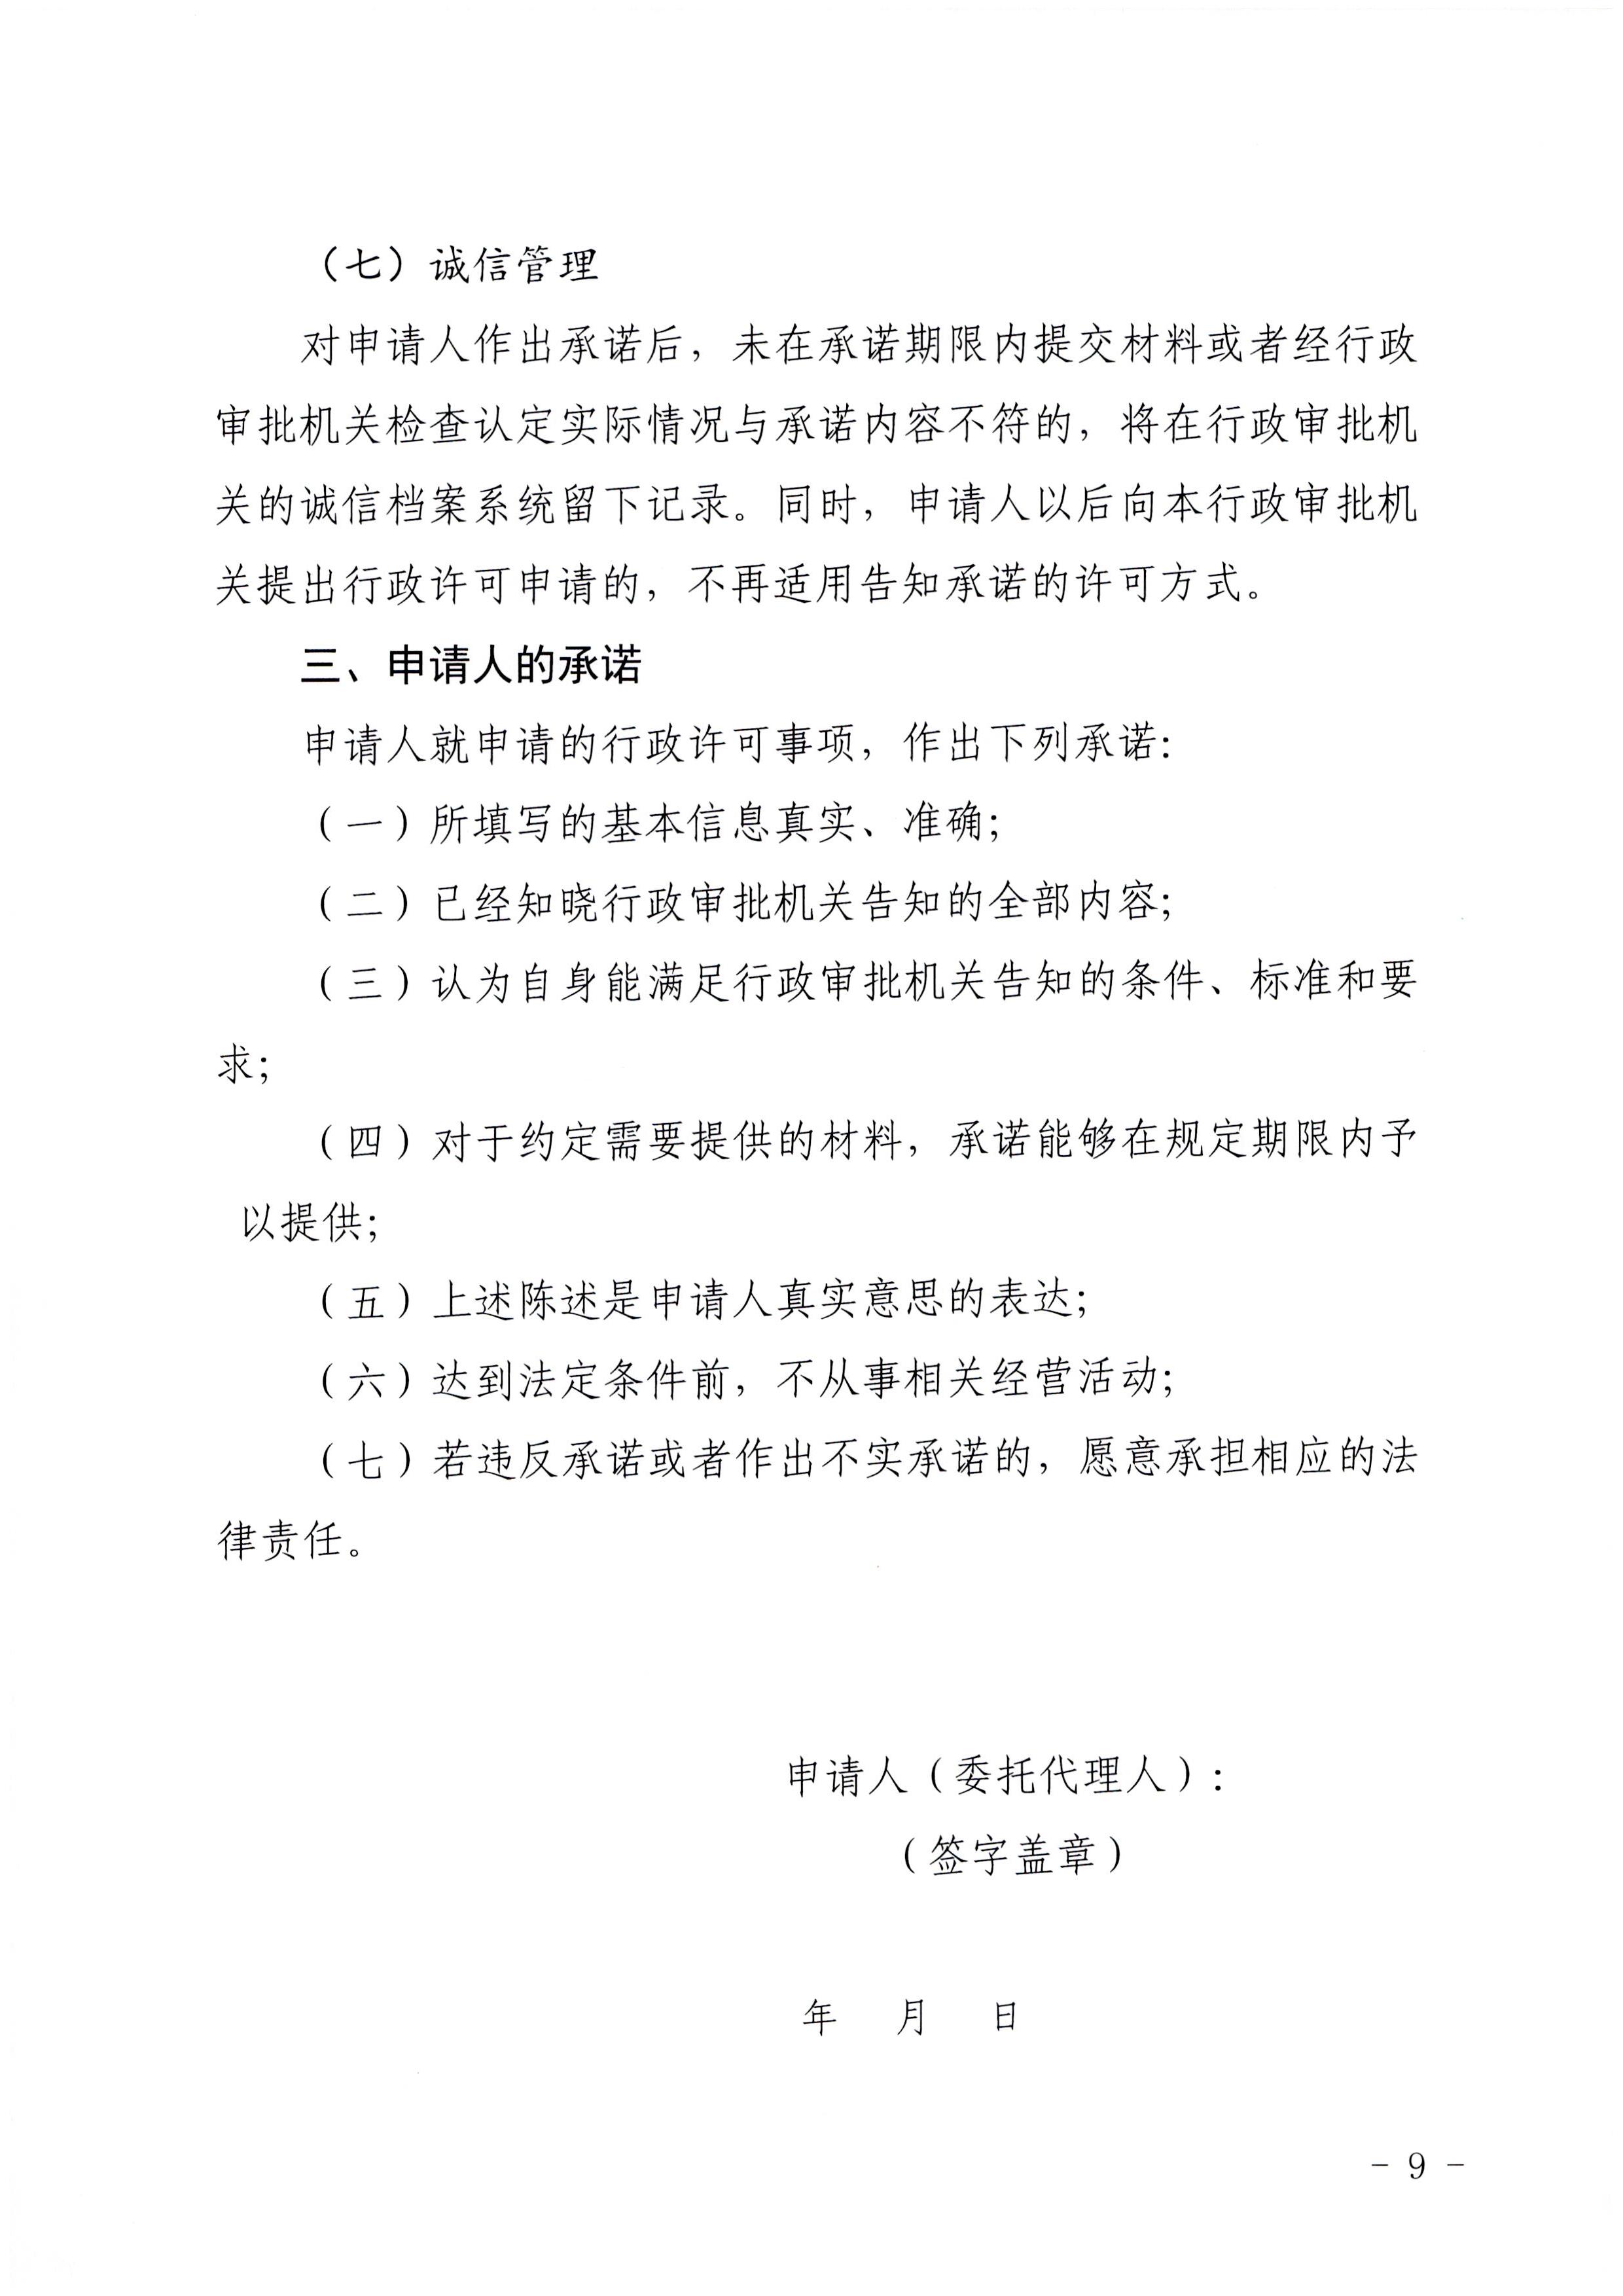 广东省文化和旅游厅印发证照分离改革实施方案的通知_页面_45.jpg